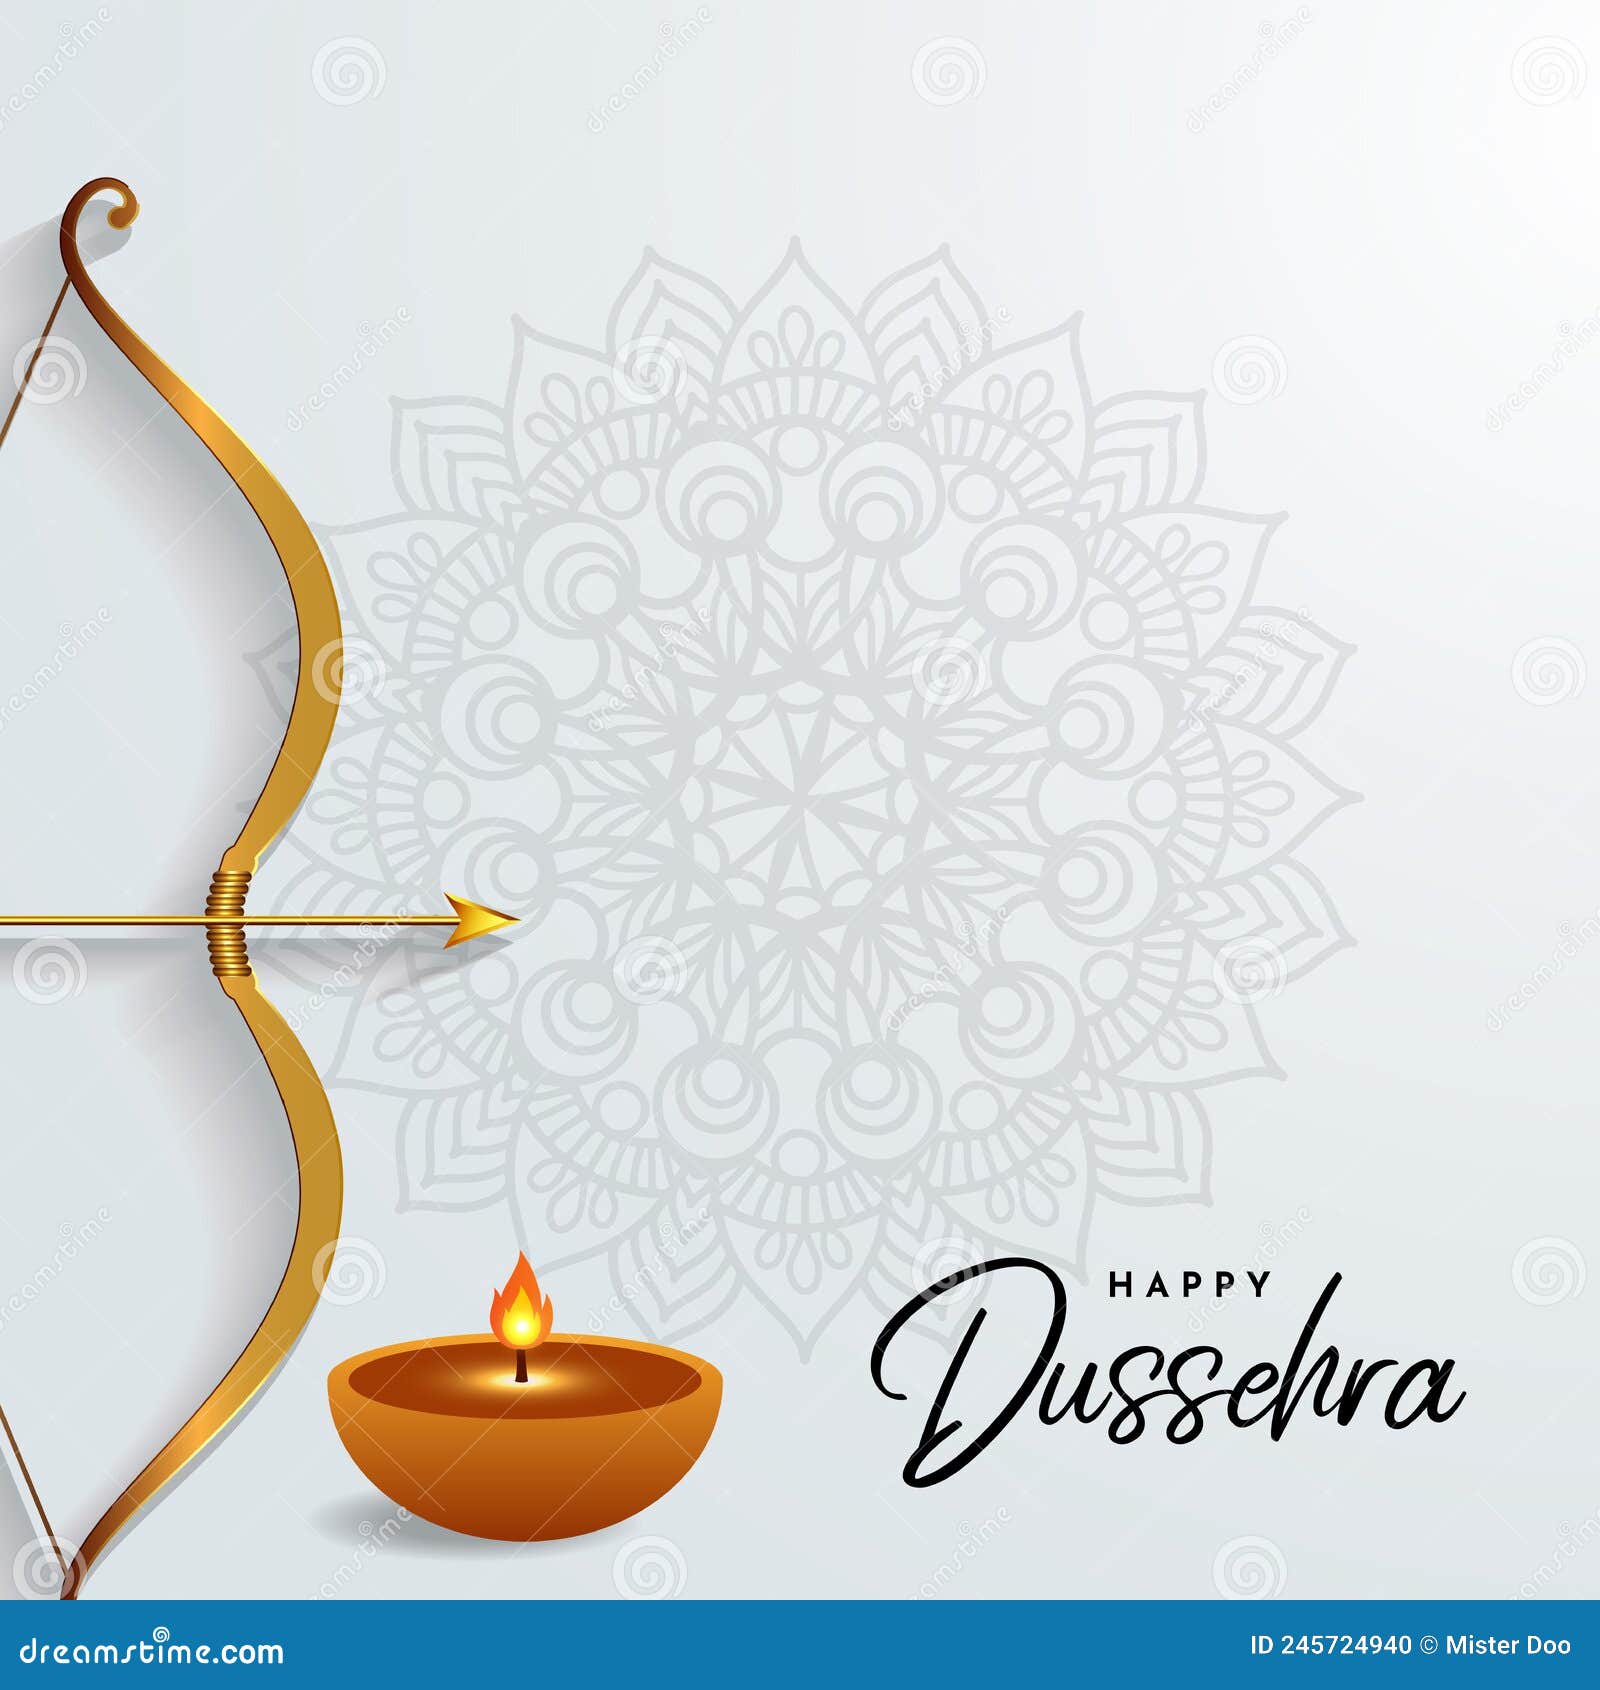 Elegant Dussehra Festival Design Background Stock Vector - Illustration of  king, candle: 245724940